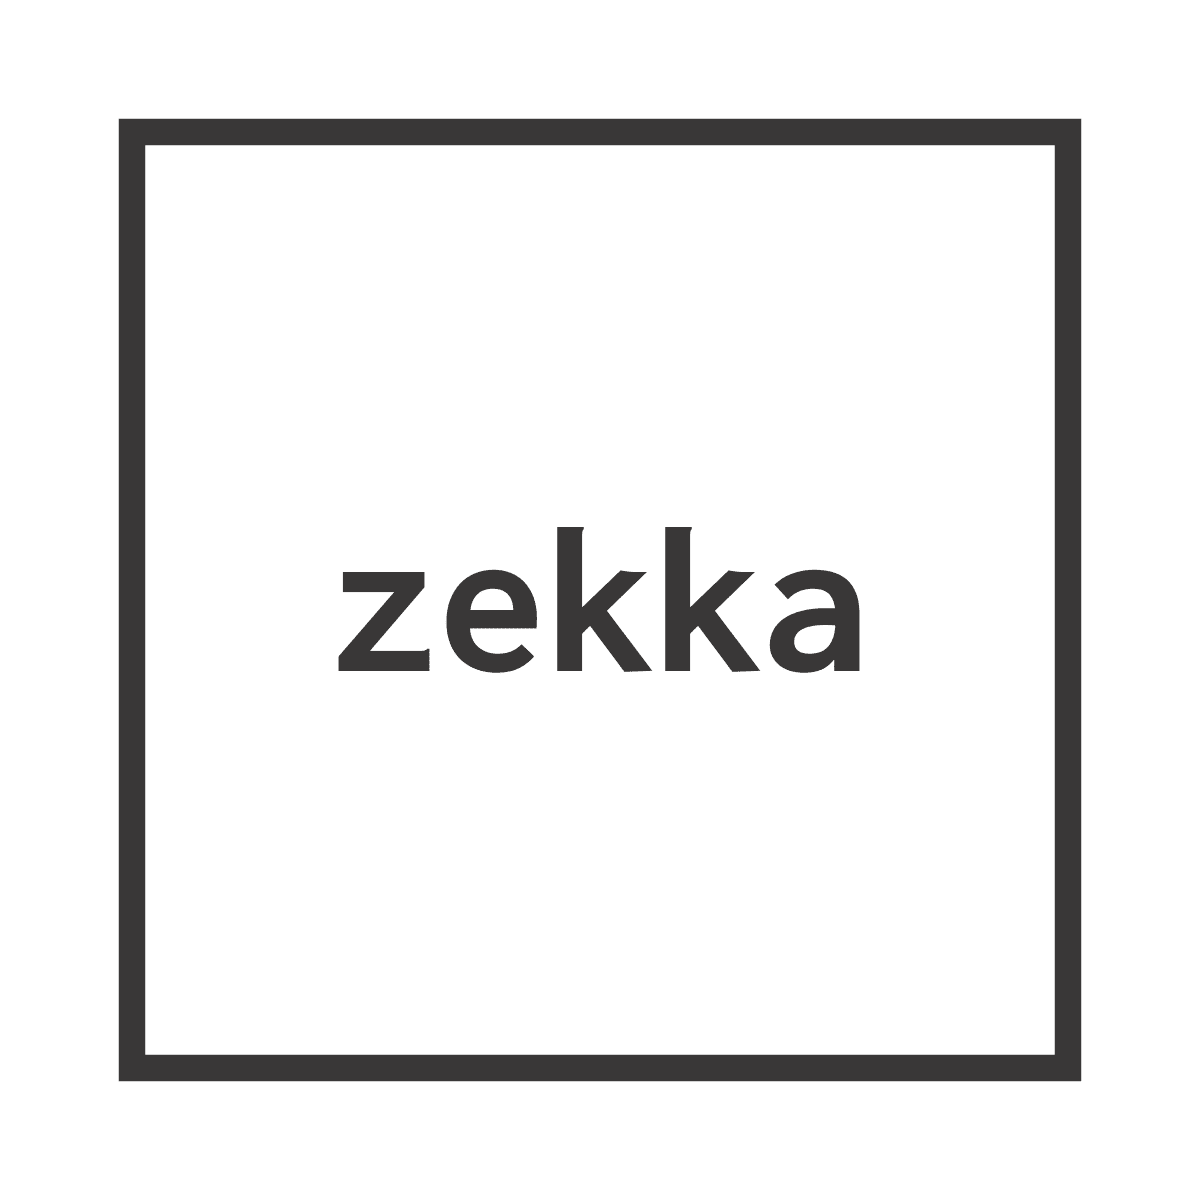 Zekka Digital